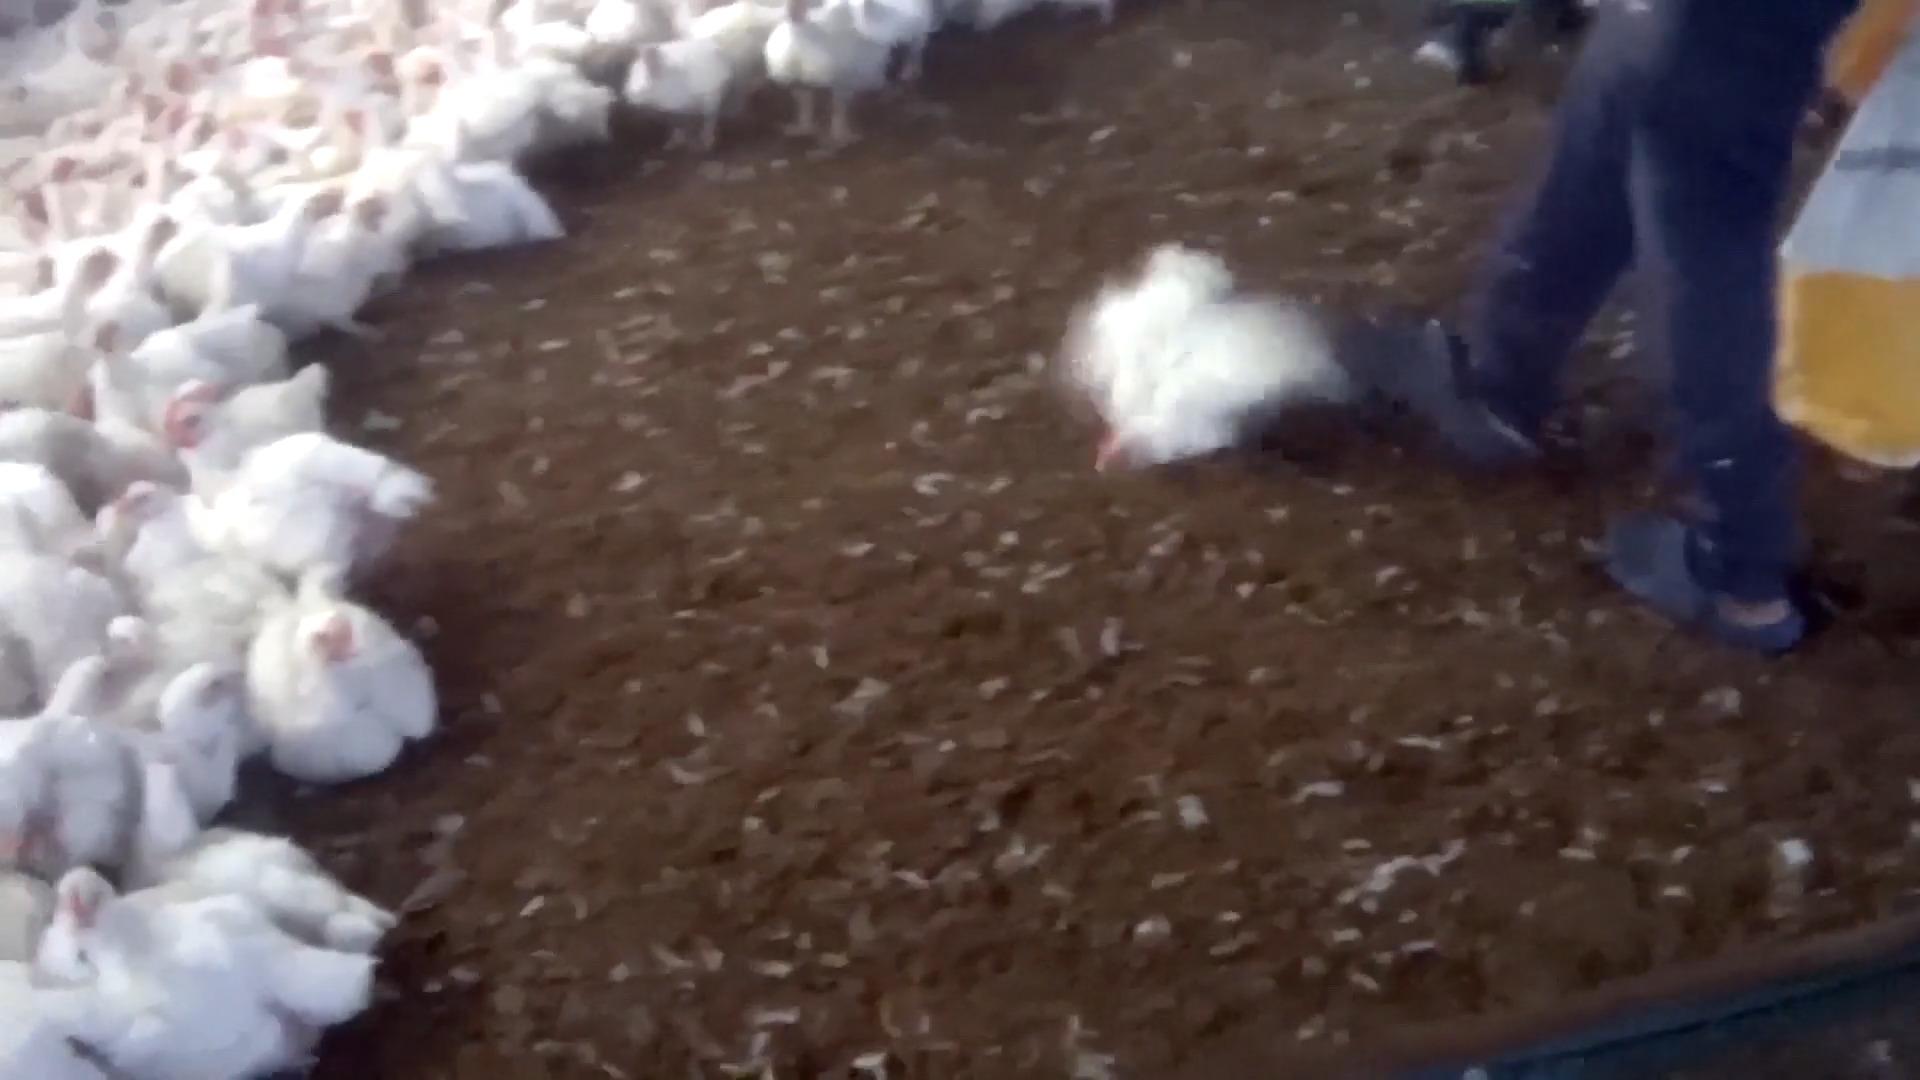 Schlachthaus-Mitarbeiter treten brutal auf Hühner ein Tierquälerei bei Lidl-Lieferant